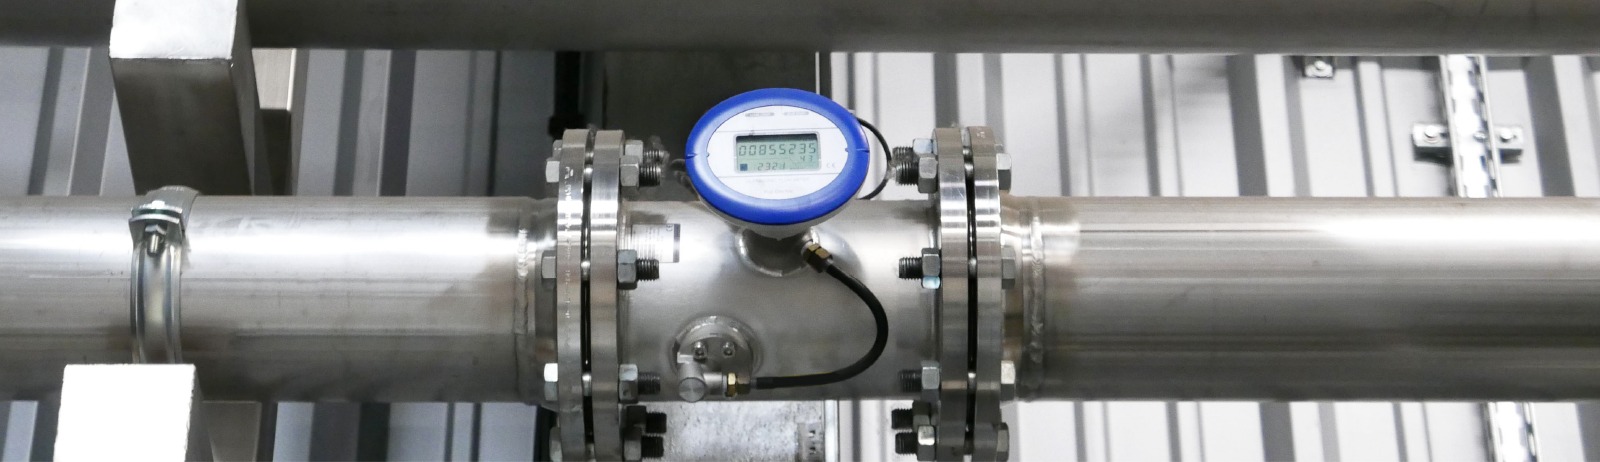 advantages of compressed air flow measurement